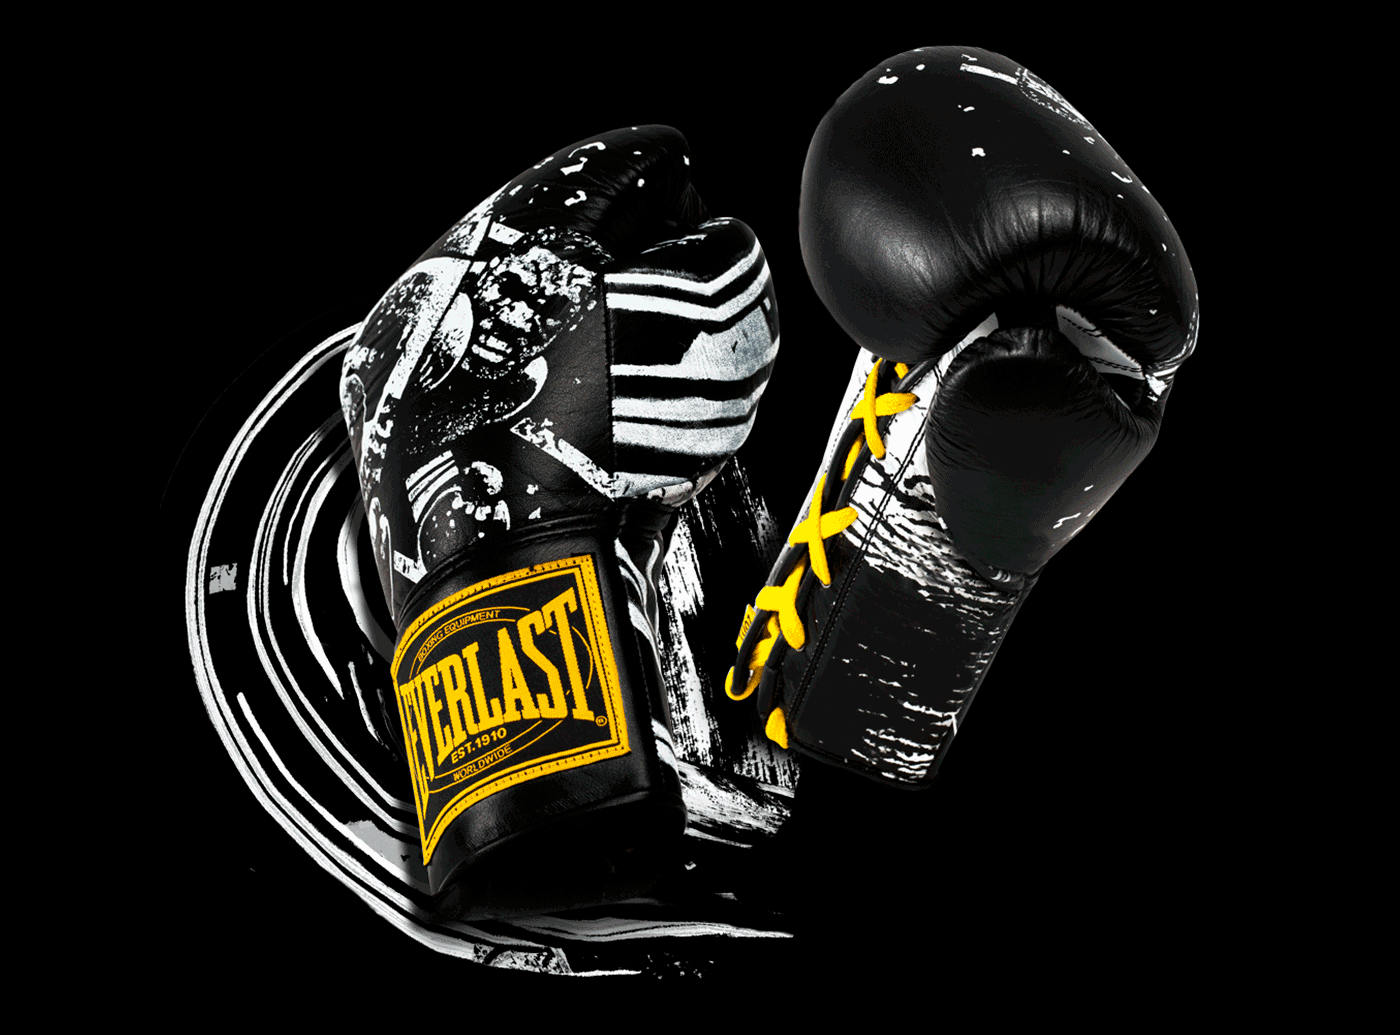 Boxing glove artwork for Everlast